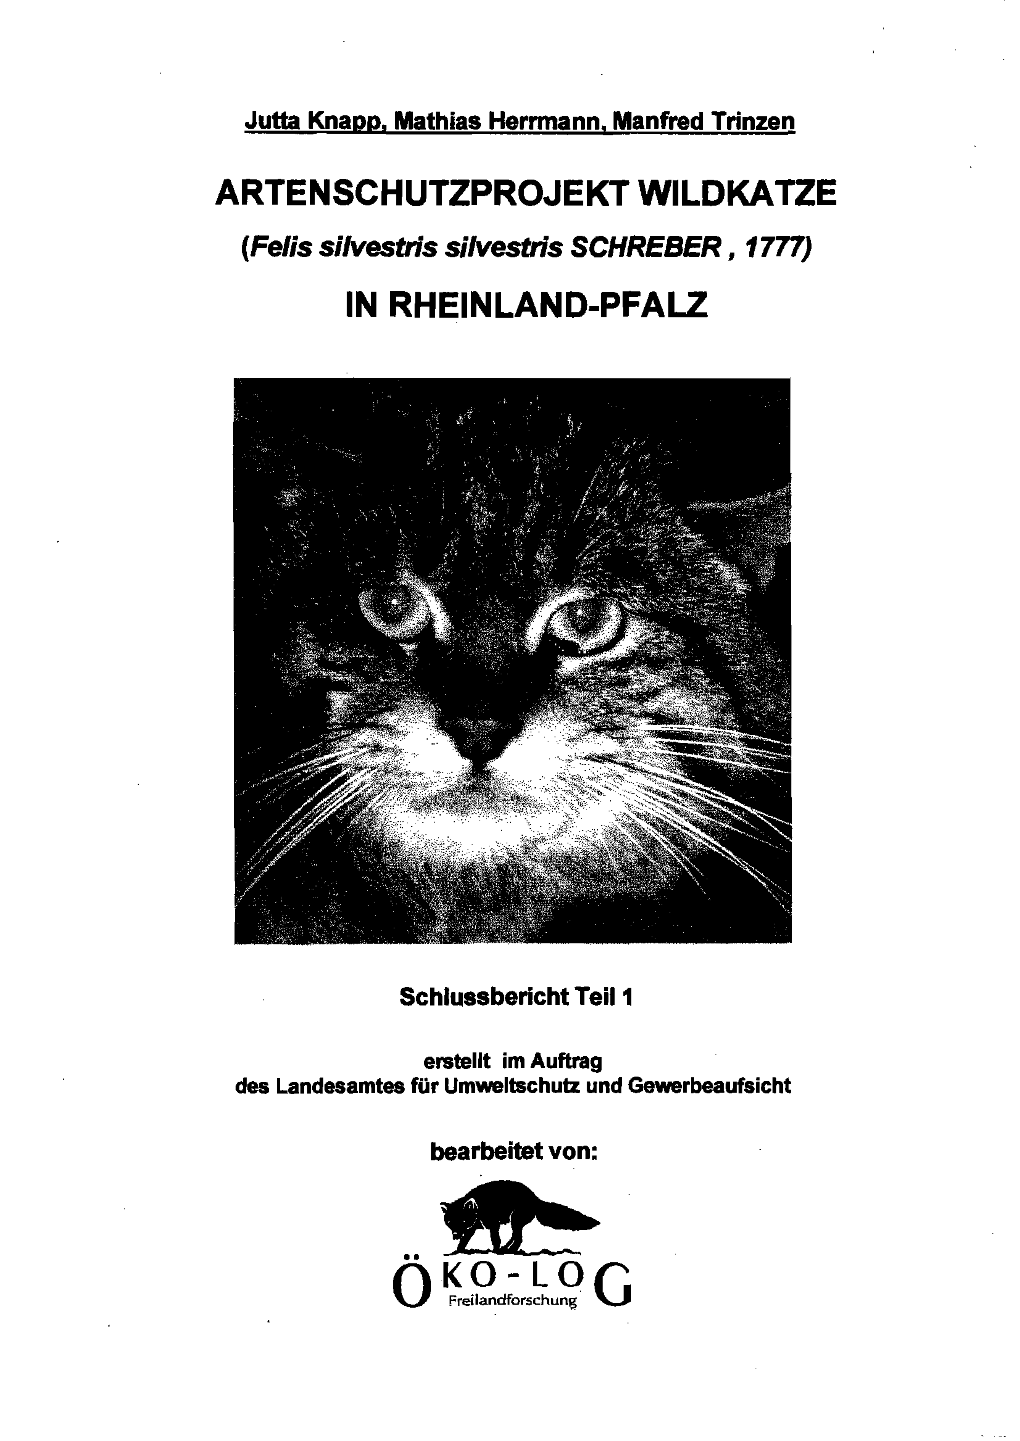 Artenschutzprojekt Wildkatze in Rheinland-Pfalz